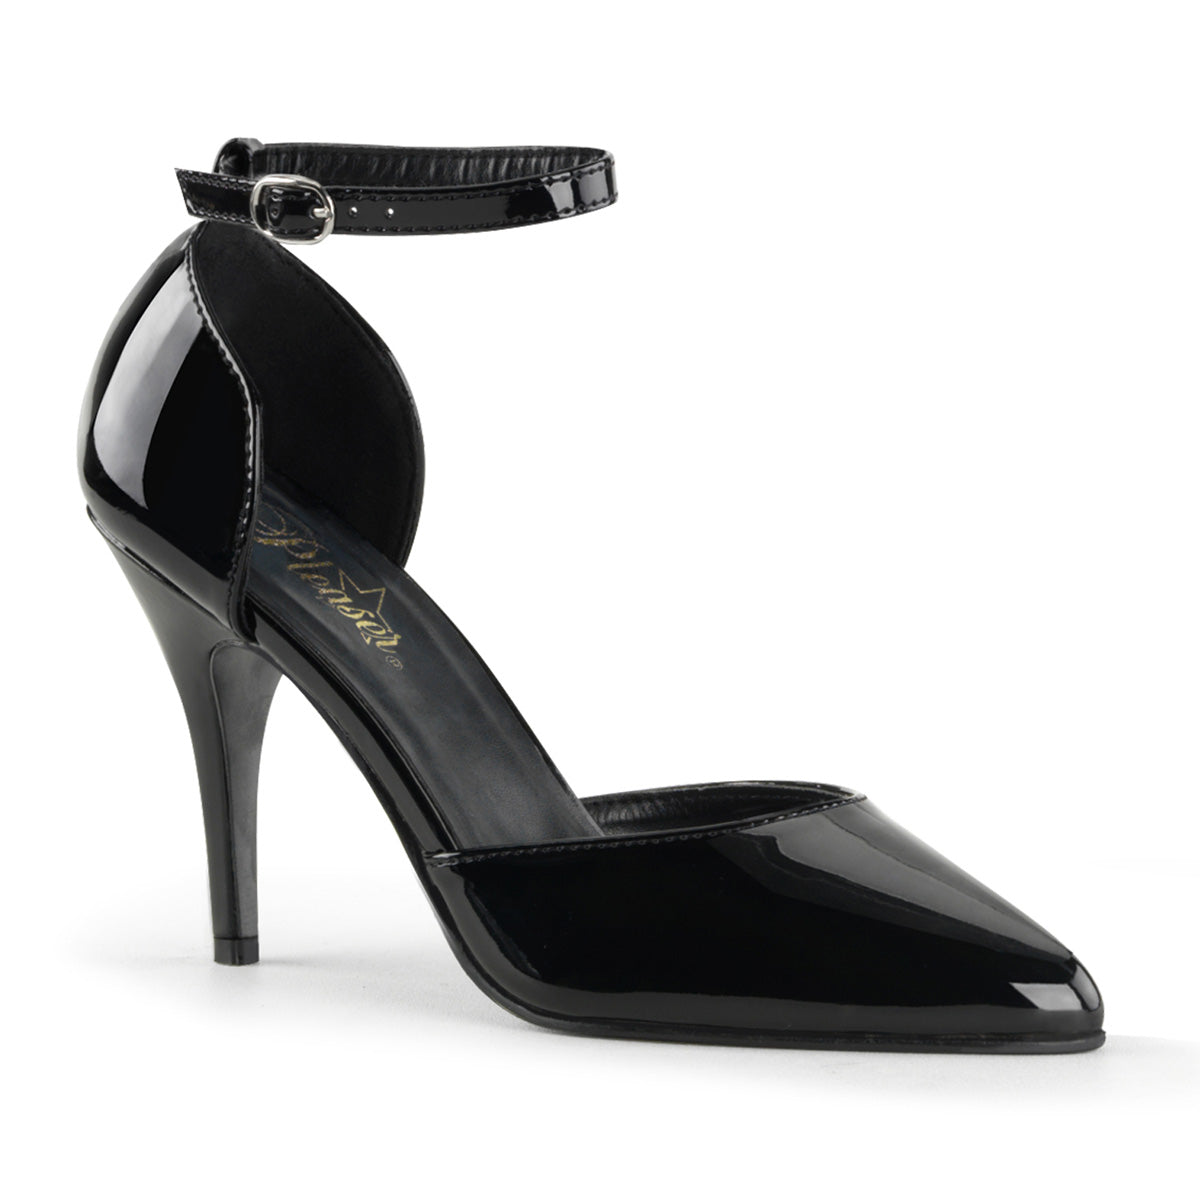 VANITY-402 Pleaser Shoe 4" Heel Black Patent Fetish Footwear